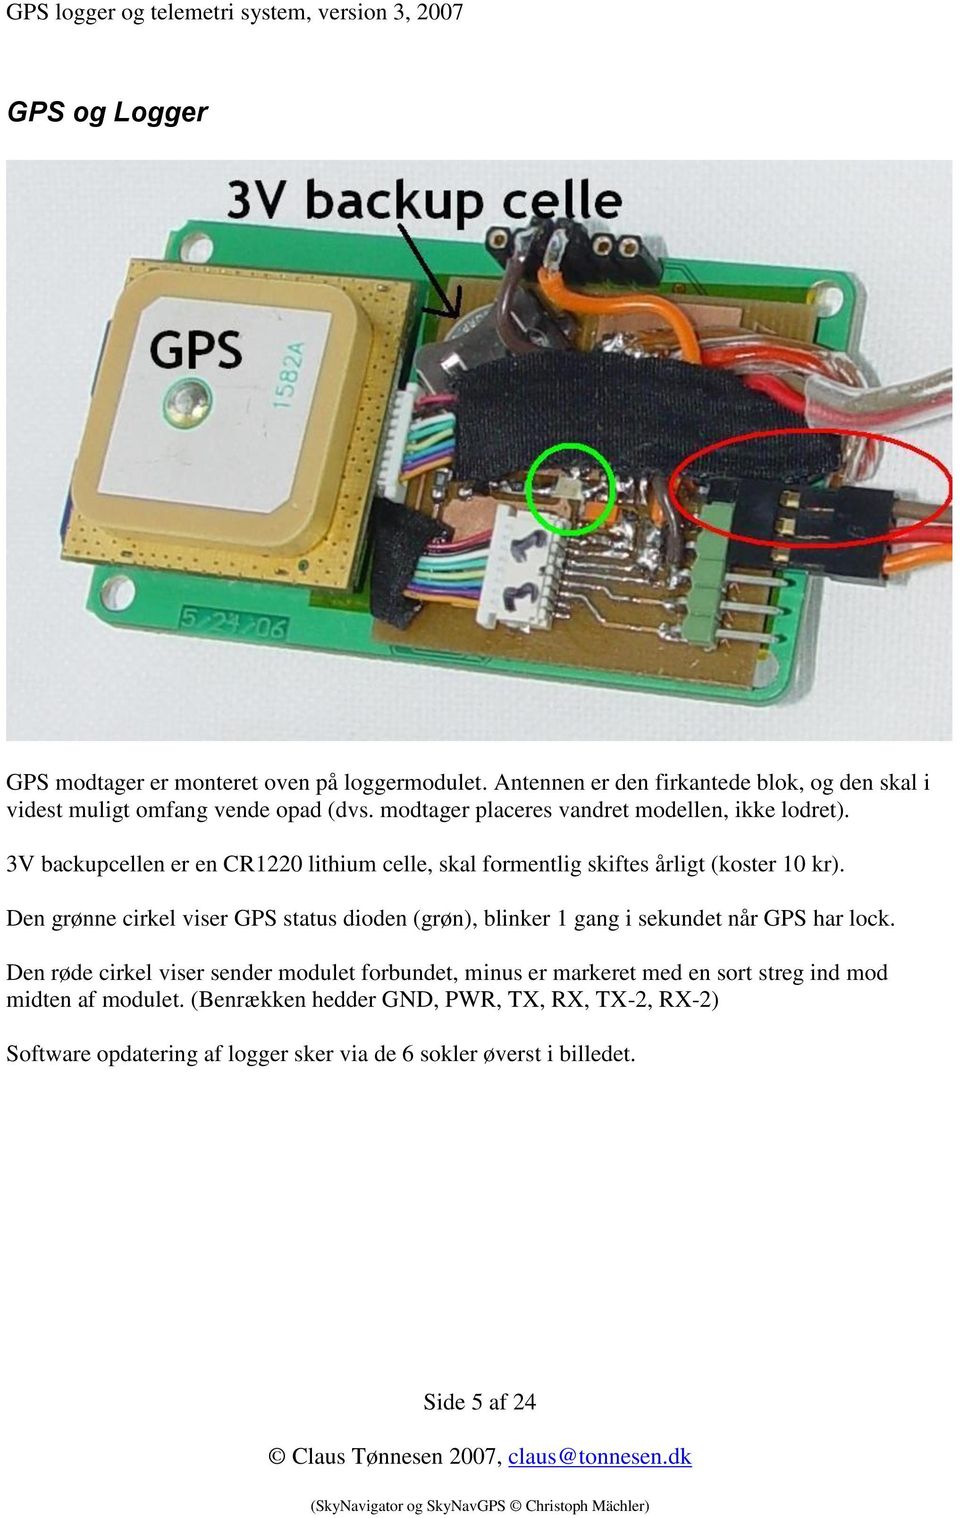 Den grønne cirkel viser GPS status dioden (grøn), blinker 1 gang i sekundet når GPS har lock.